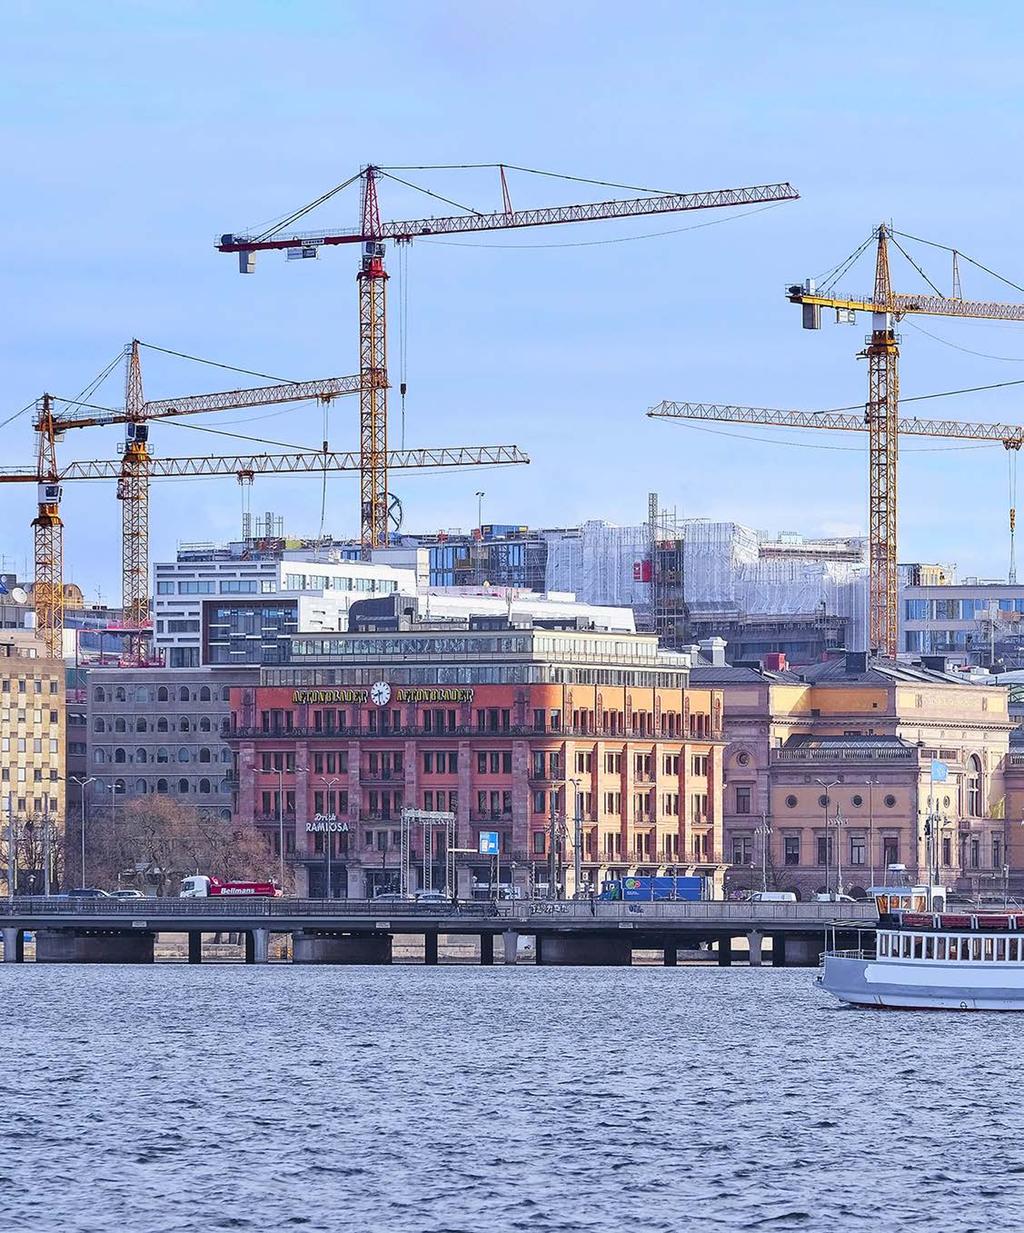 STOCKHOLMS BAROMETERN ANDRA KVARTALET, AUGUSTI 2016. En rapport från Stockholms Handelskammare SVAGT NORMALT STARKT Stockholmsbarometern försvagas under andra kvartalet 2016.